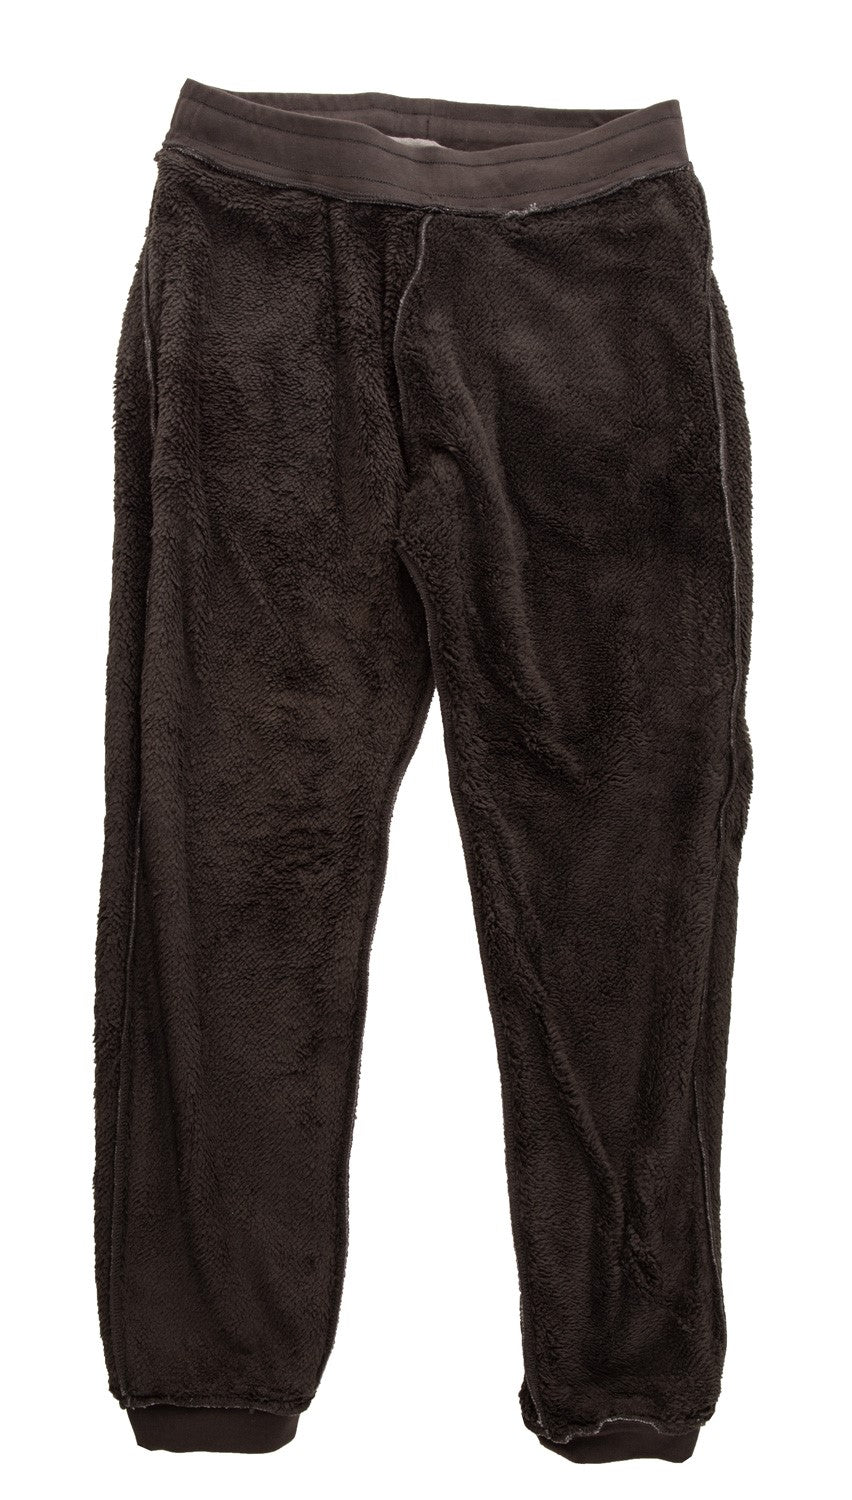 Seattle Kraken Sherpa Lined Sweatpants with Pockets